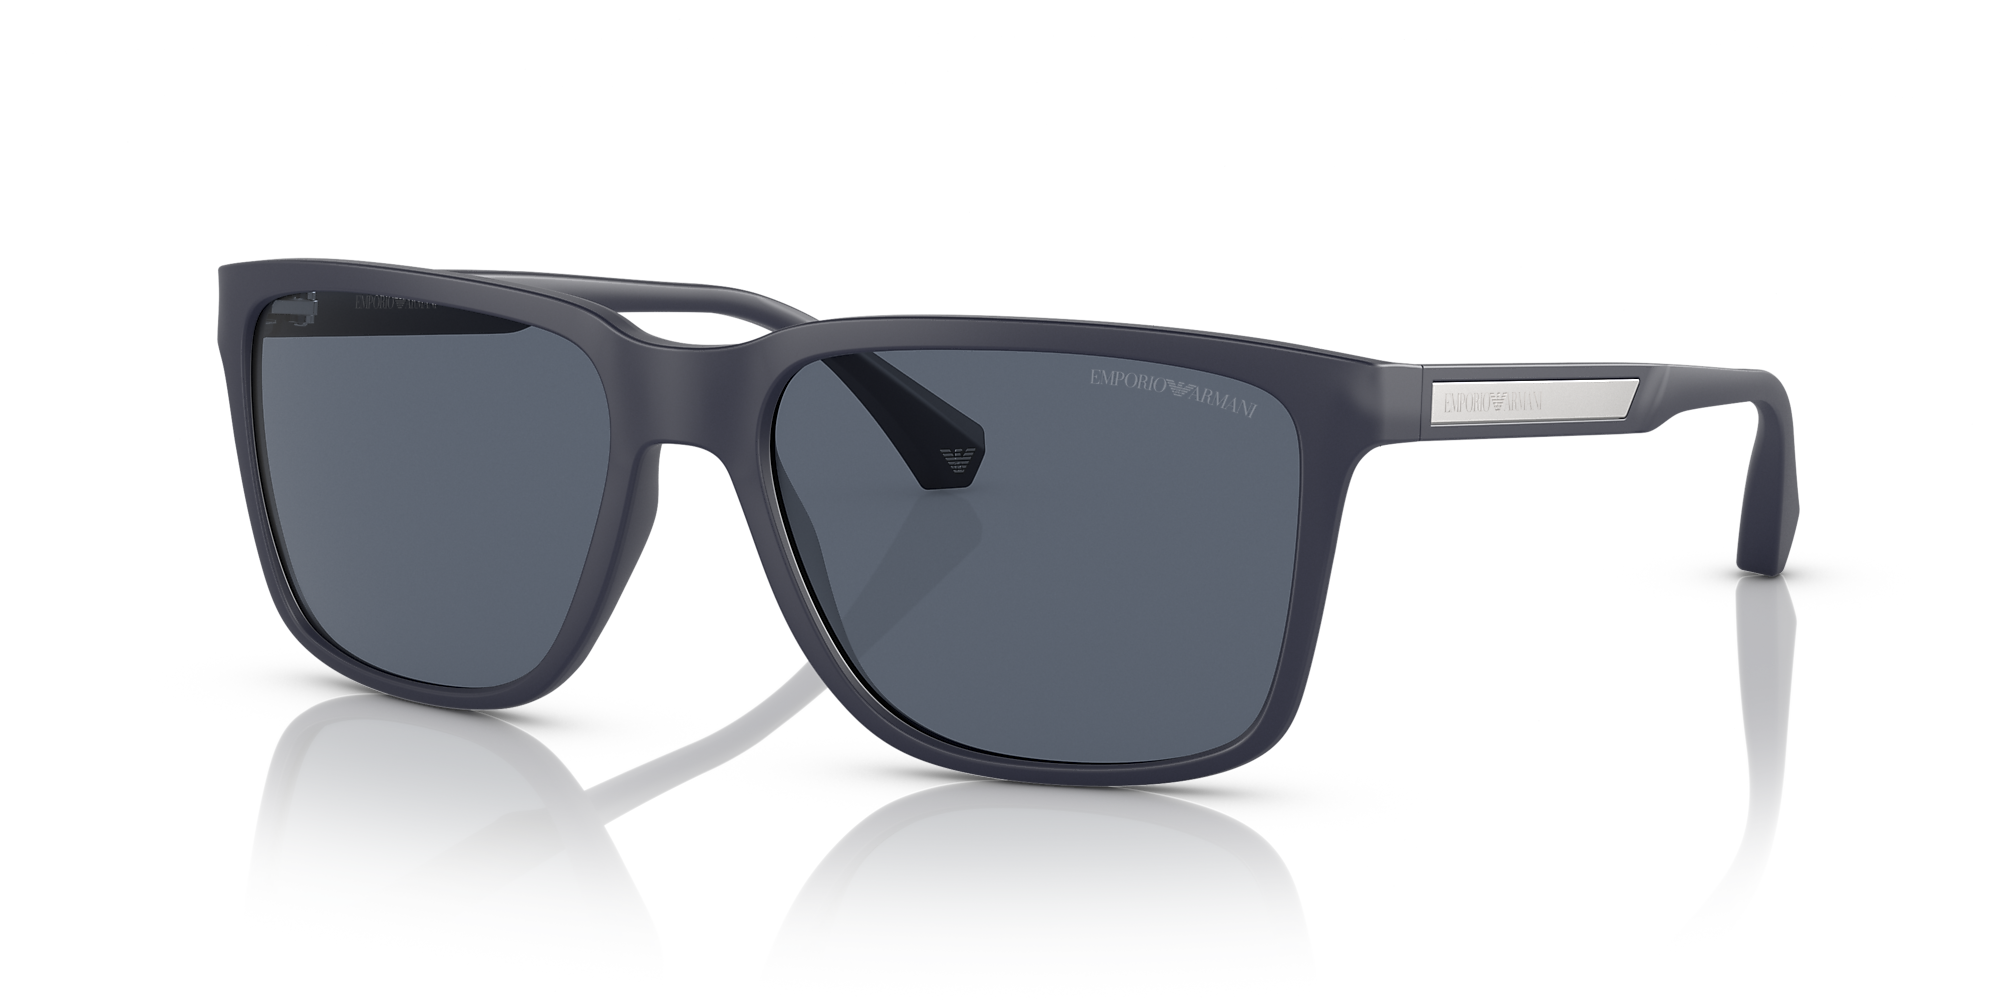 Emporio Armani EA4047 56 Dark Blue & Matte Blue Sunglasses | Sunglass ...